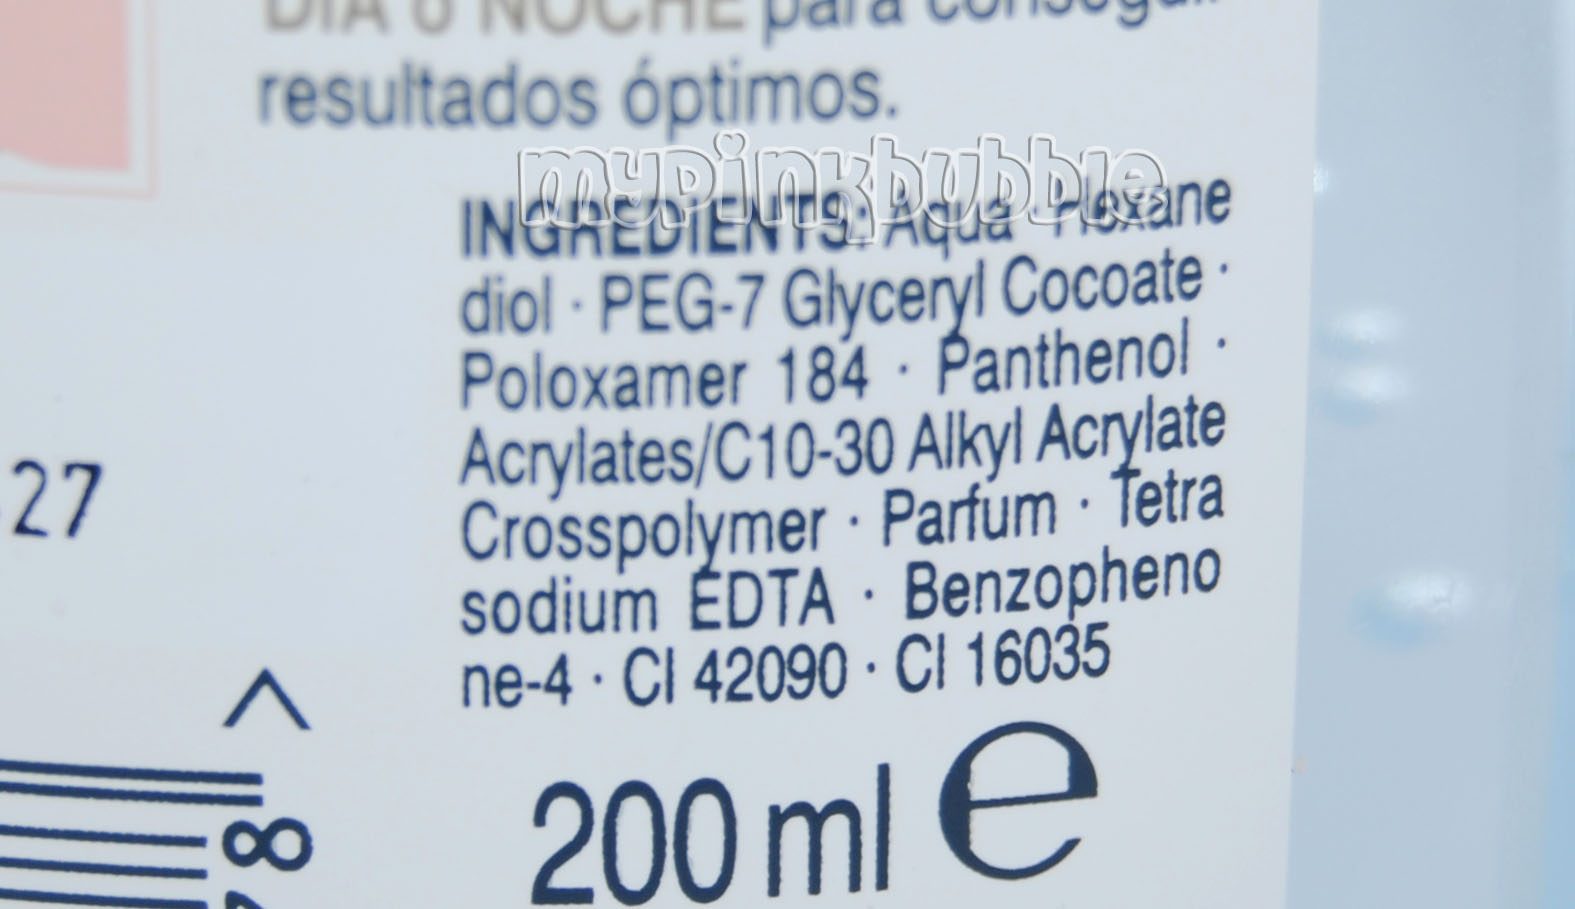 Diadermine 110 gel de belleza ingredientes